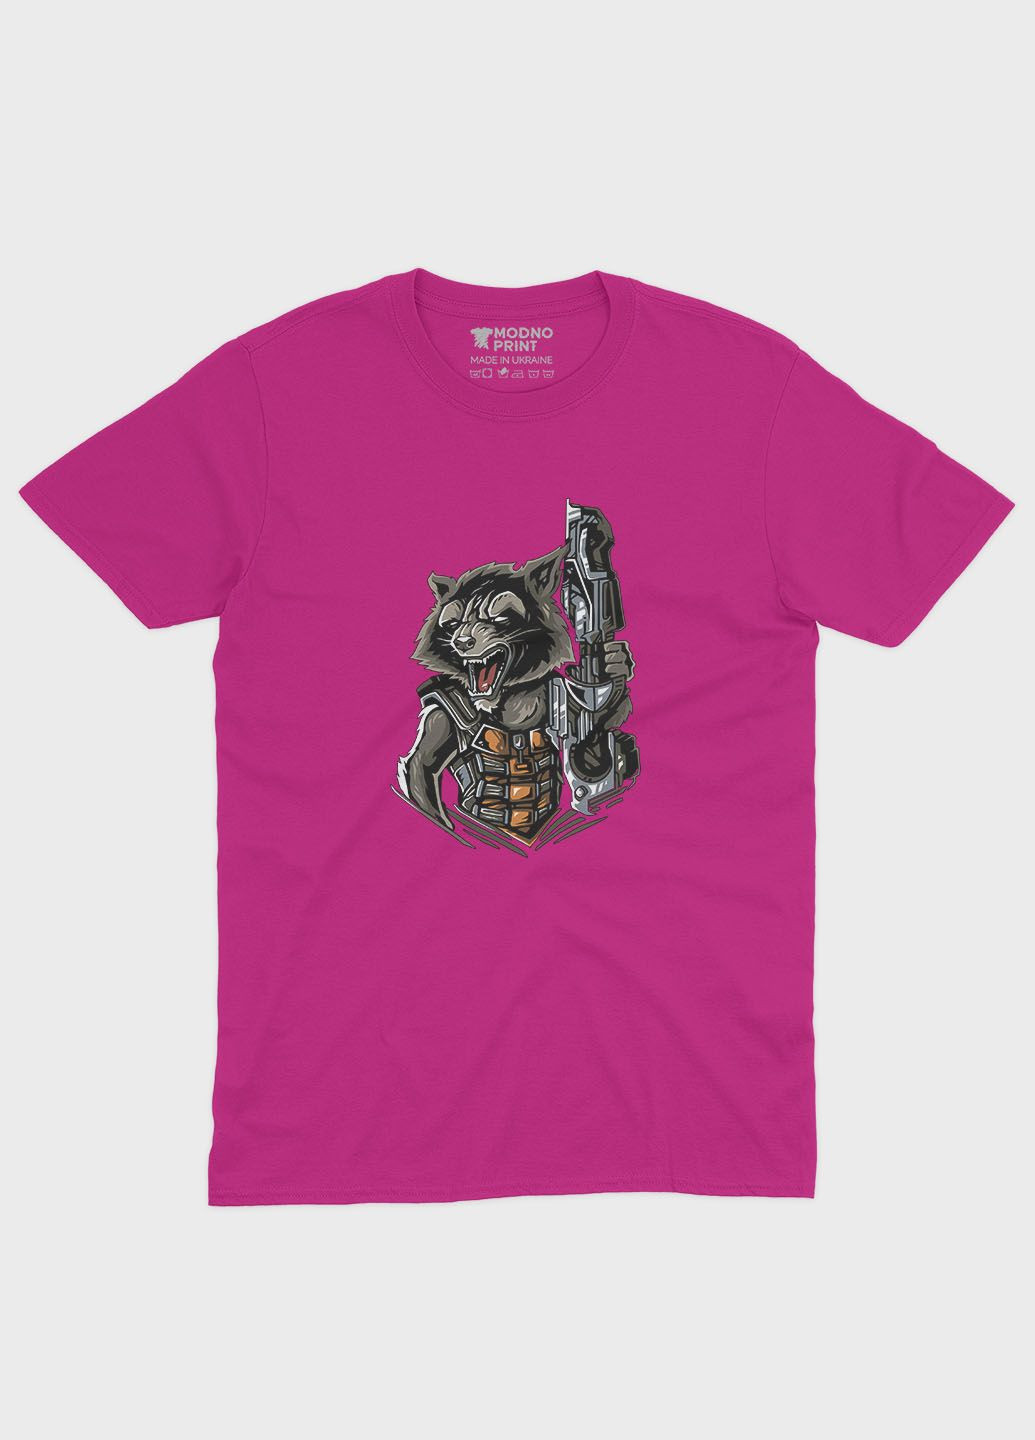 Розовая демисезонная футболка для девочки с принтом супергероев - часовые галактики (ts001-1-fuxj-006-017-015-g) Modno